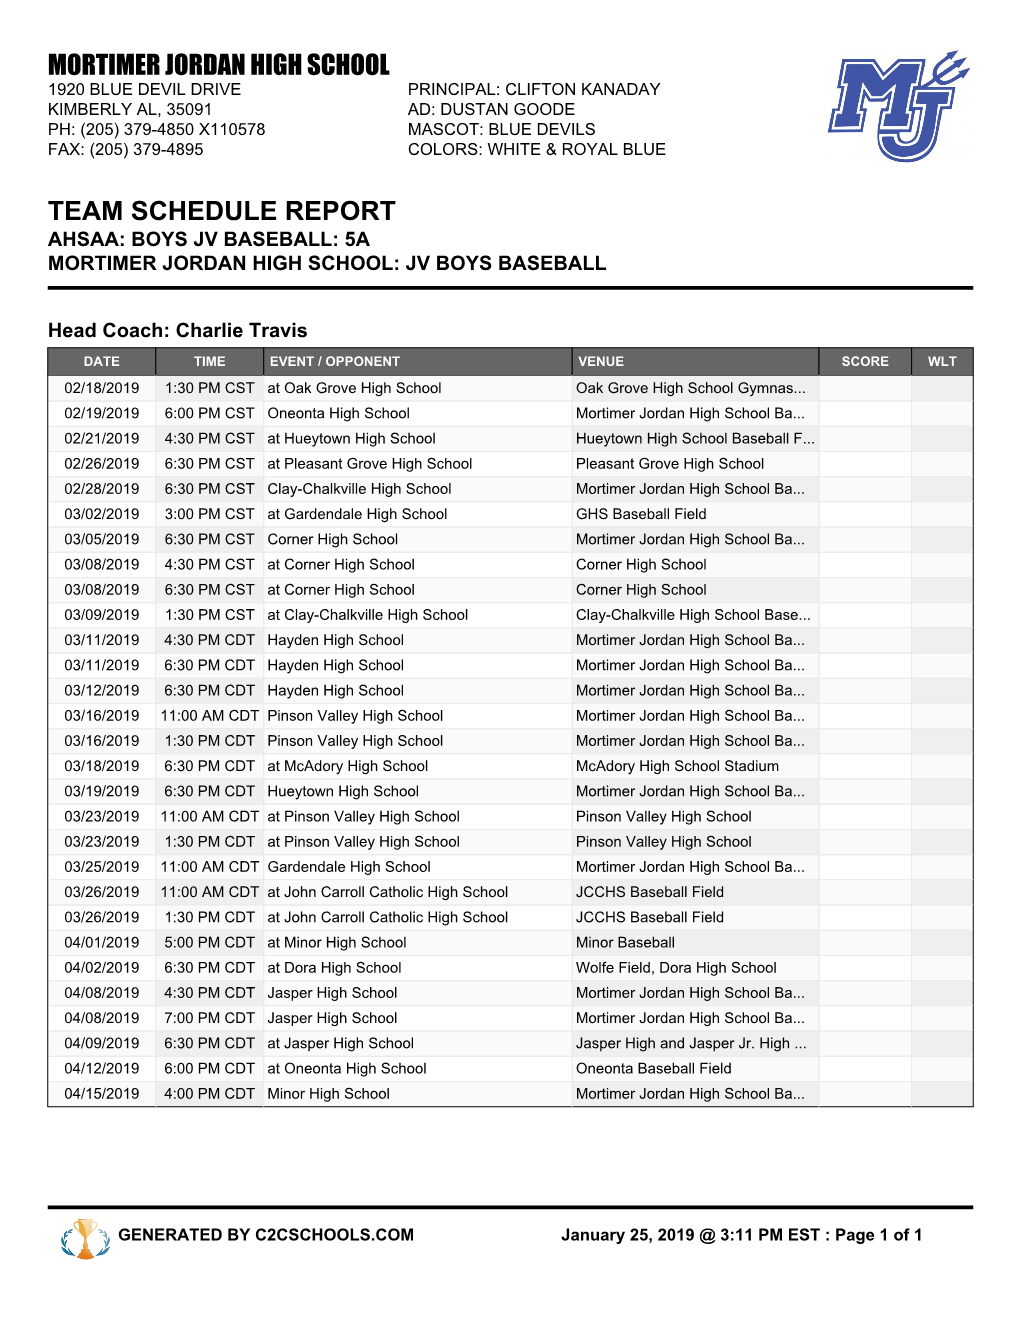 Mortimer Jordan High School Team Schedule Report